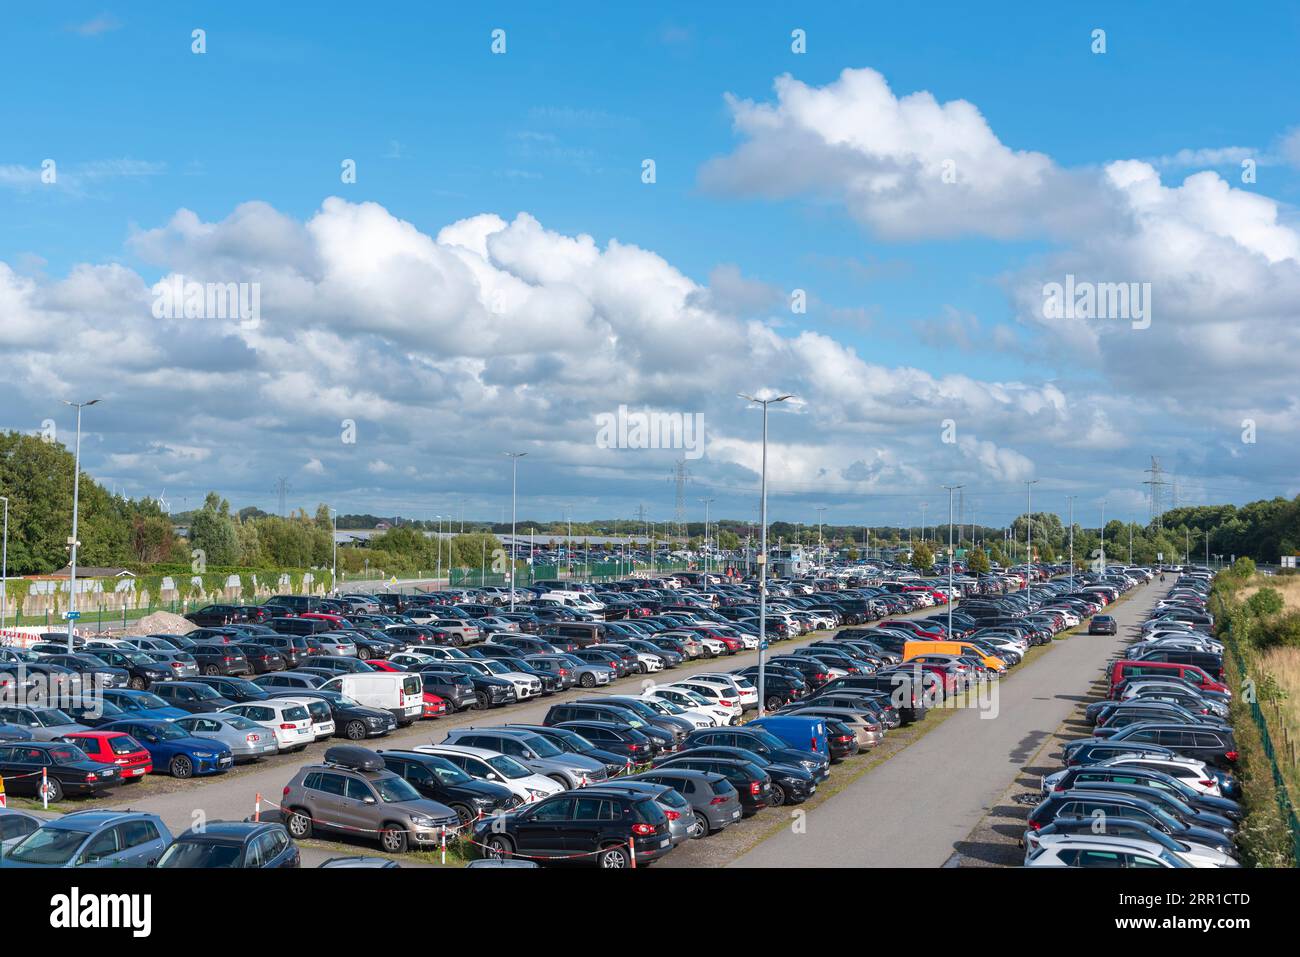 Vue sur le parking de l'île. Grand parking pour les passagers de ferry, Norddeich, Basse-Saxe, Allemagne, Europe Banque D'Images